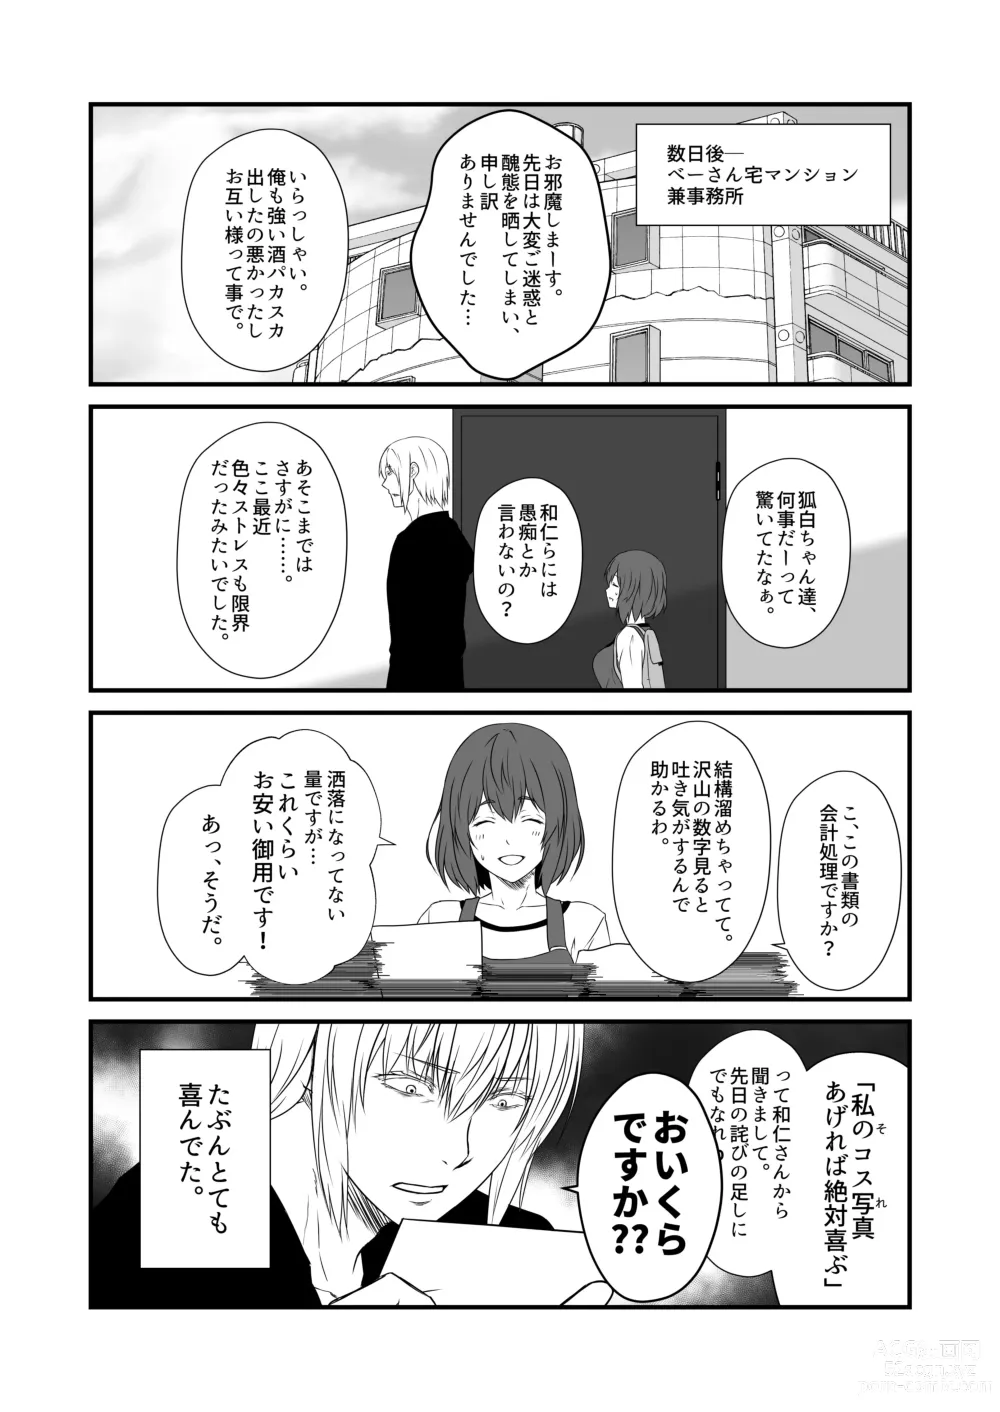 Page 9 of doujinshi Kohaku Biyori Vol. 9